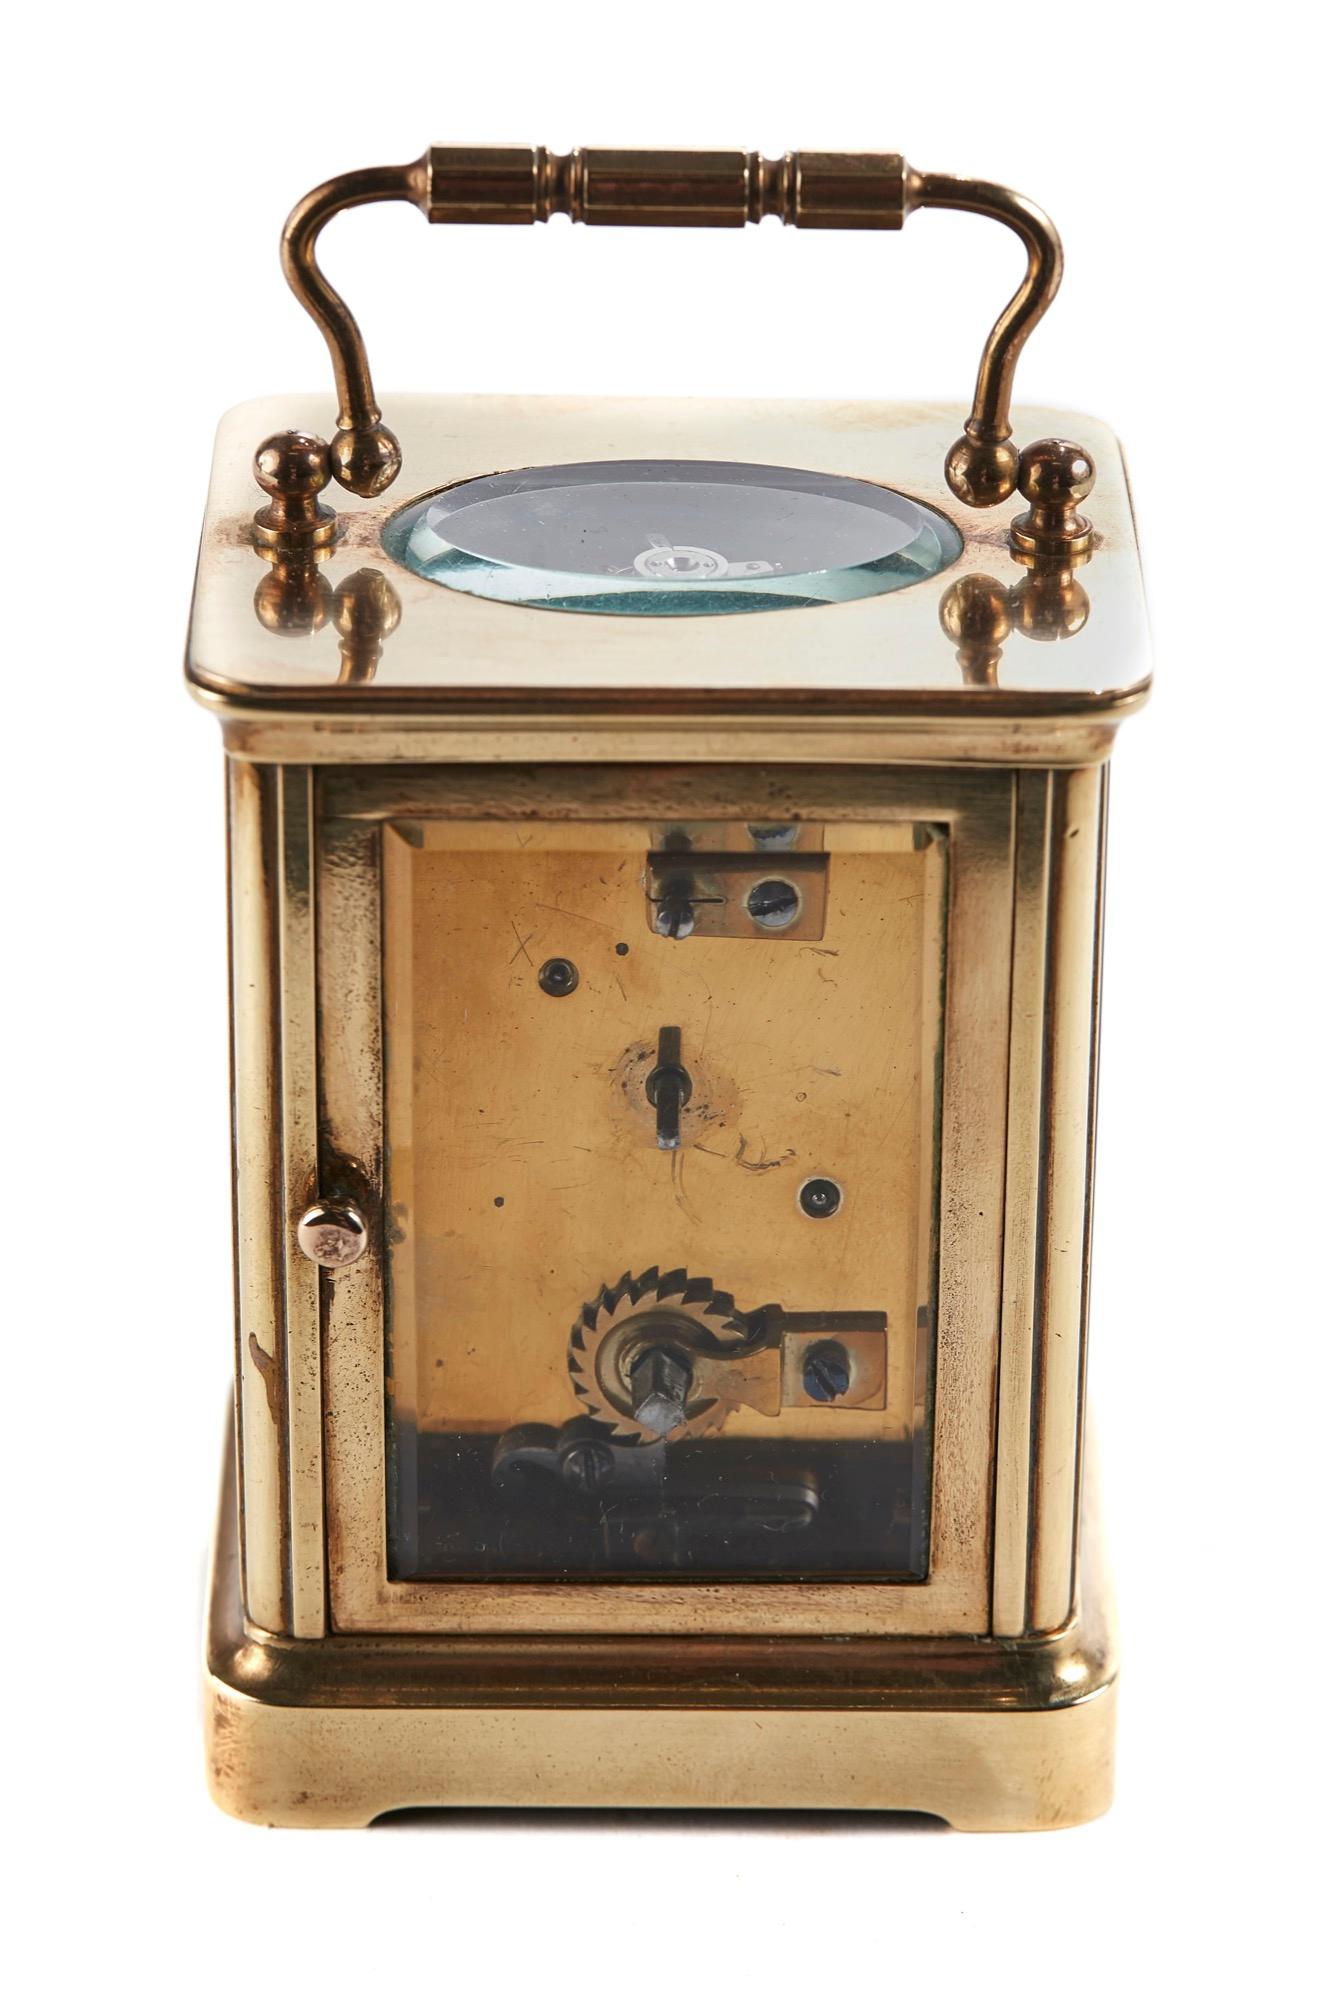 European Antique Brass Carriage Clock, circa 1900